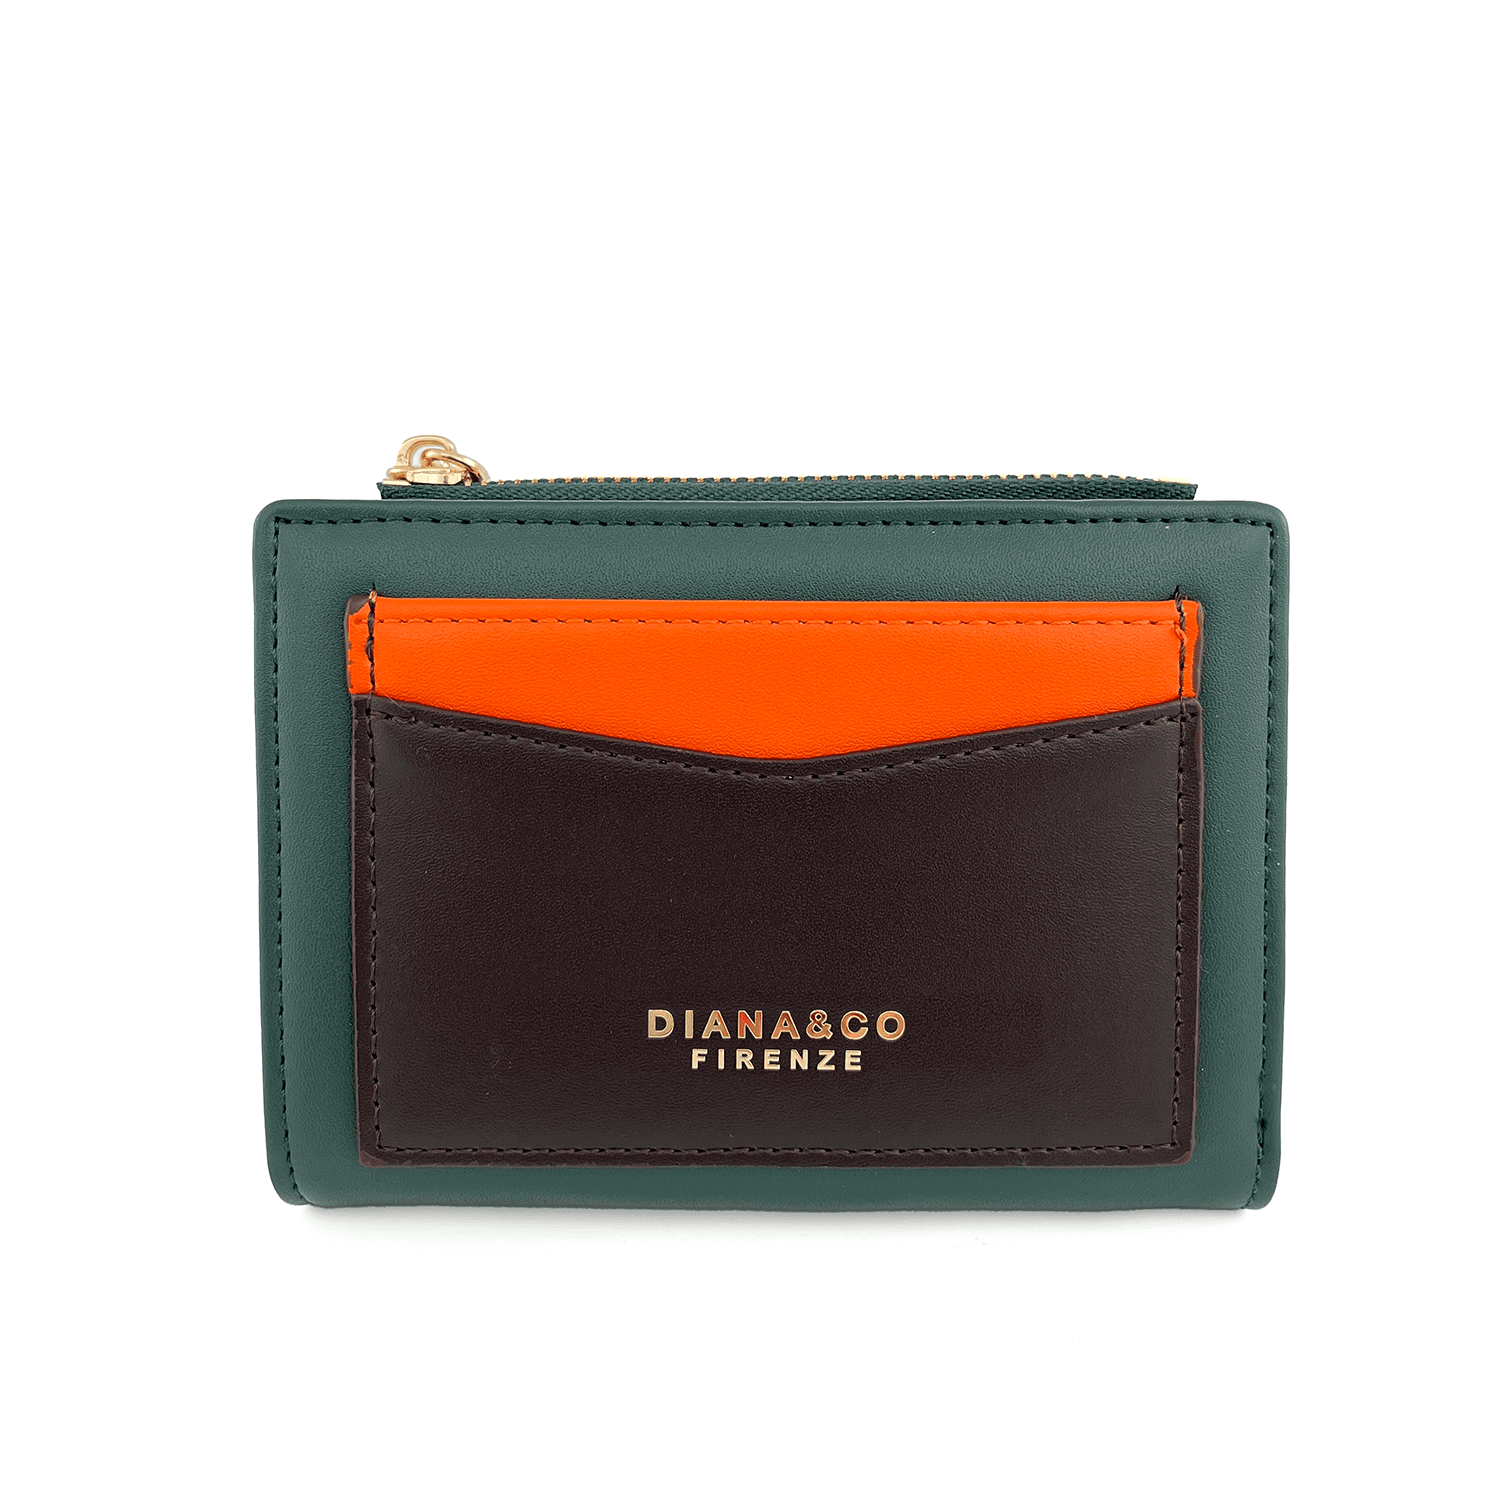 Diana & Co - Цветно дамско портмоне - зелено/оранжево